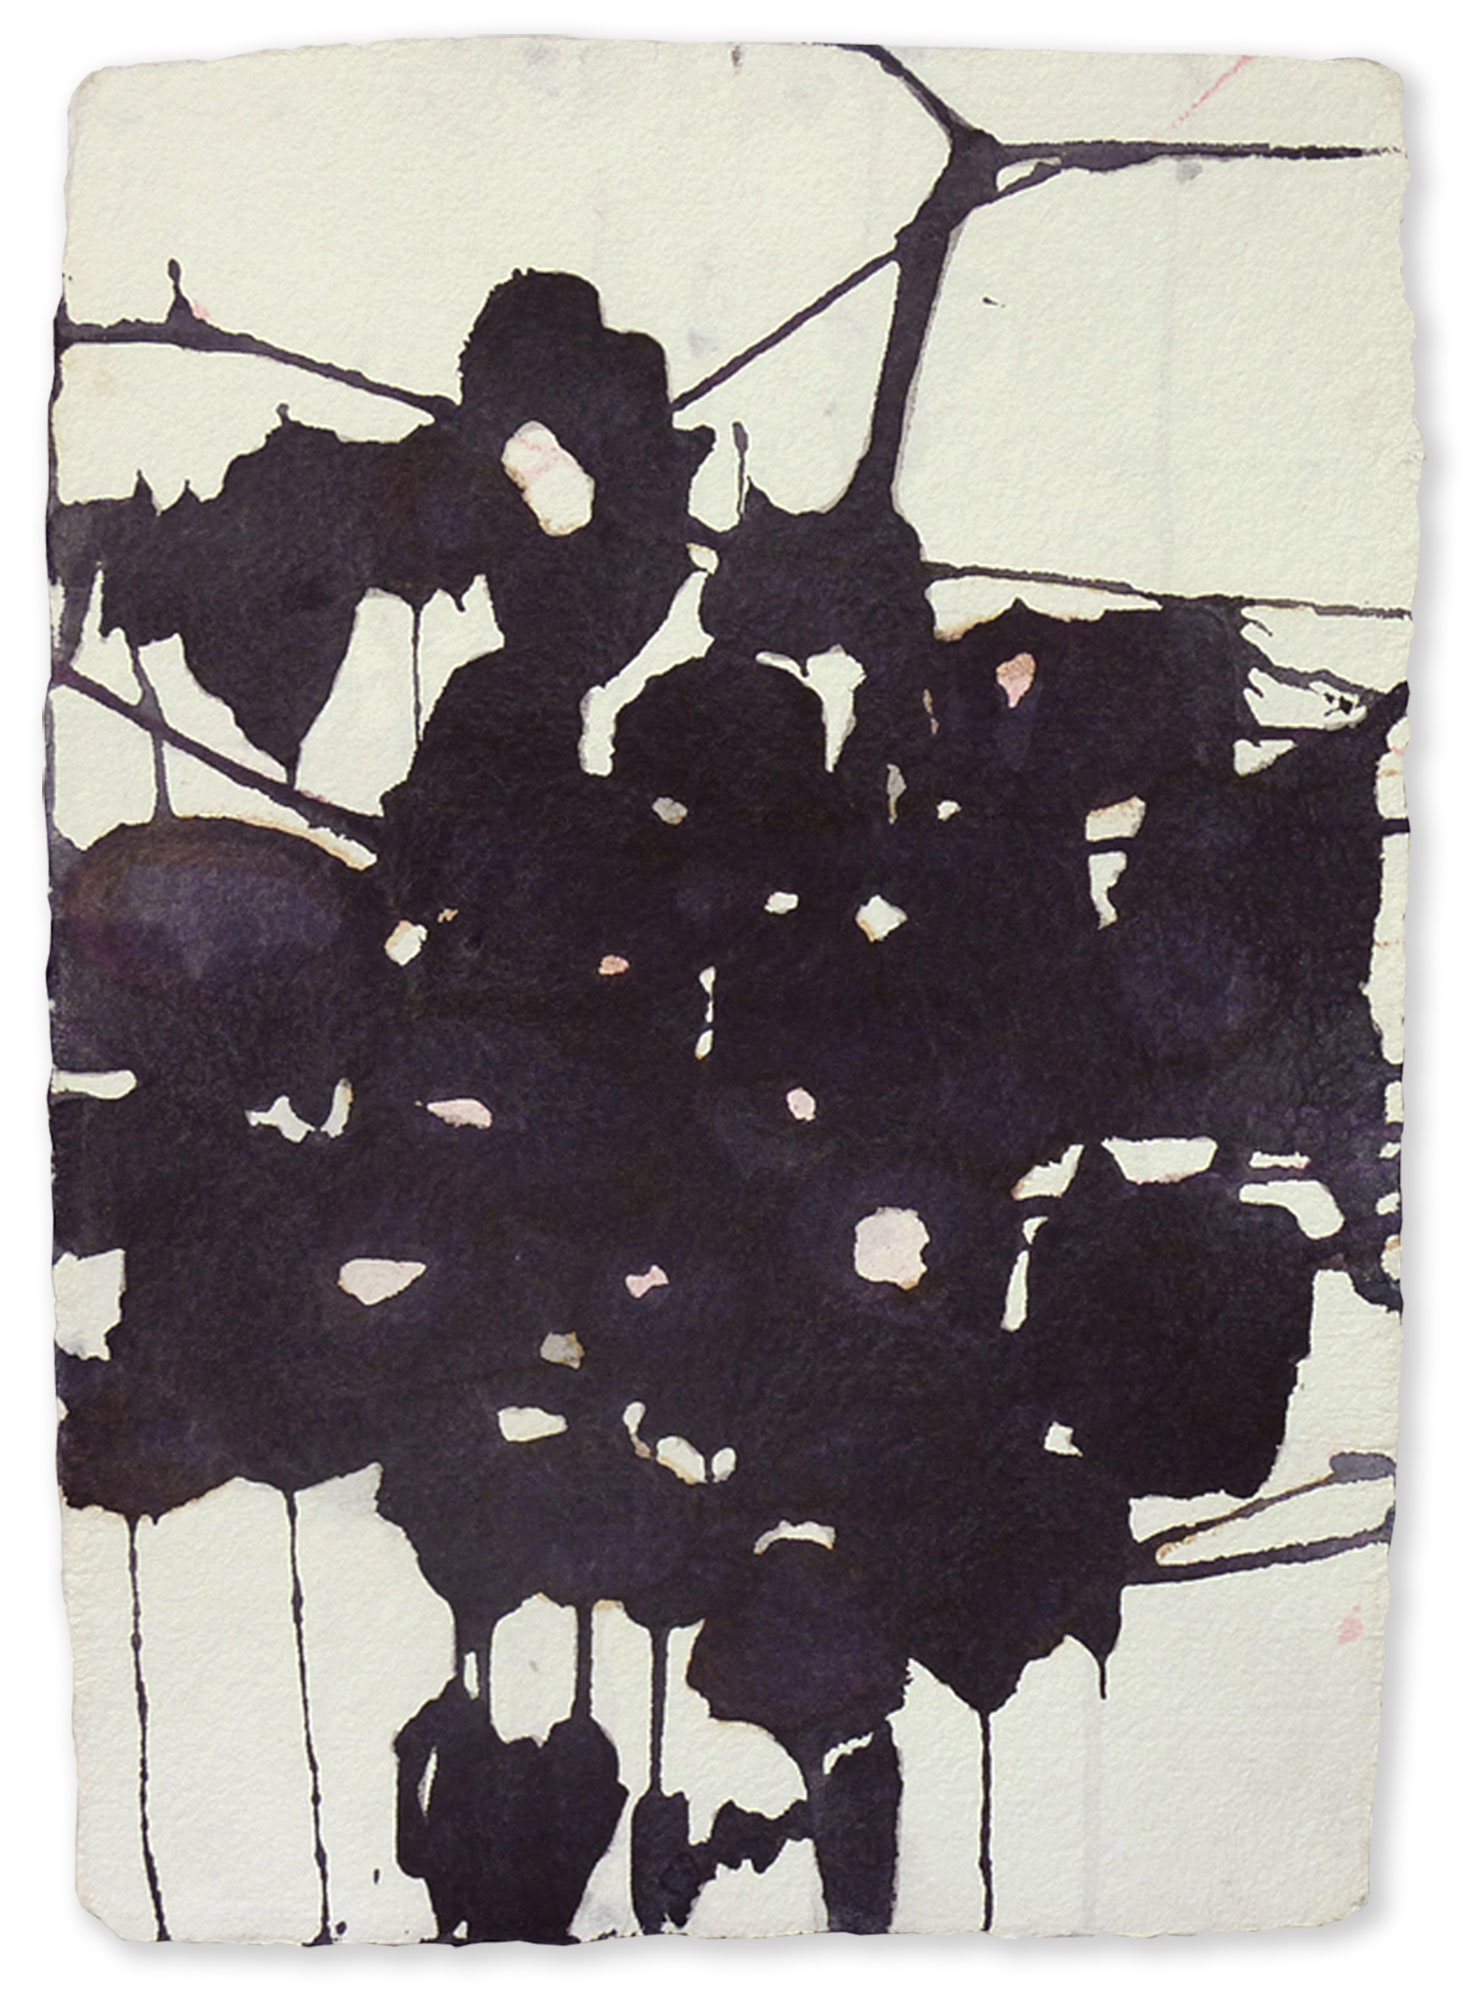 MAS C1 / 2009, watercolor on paper, 45 x 35 cm